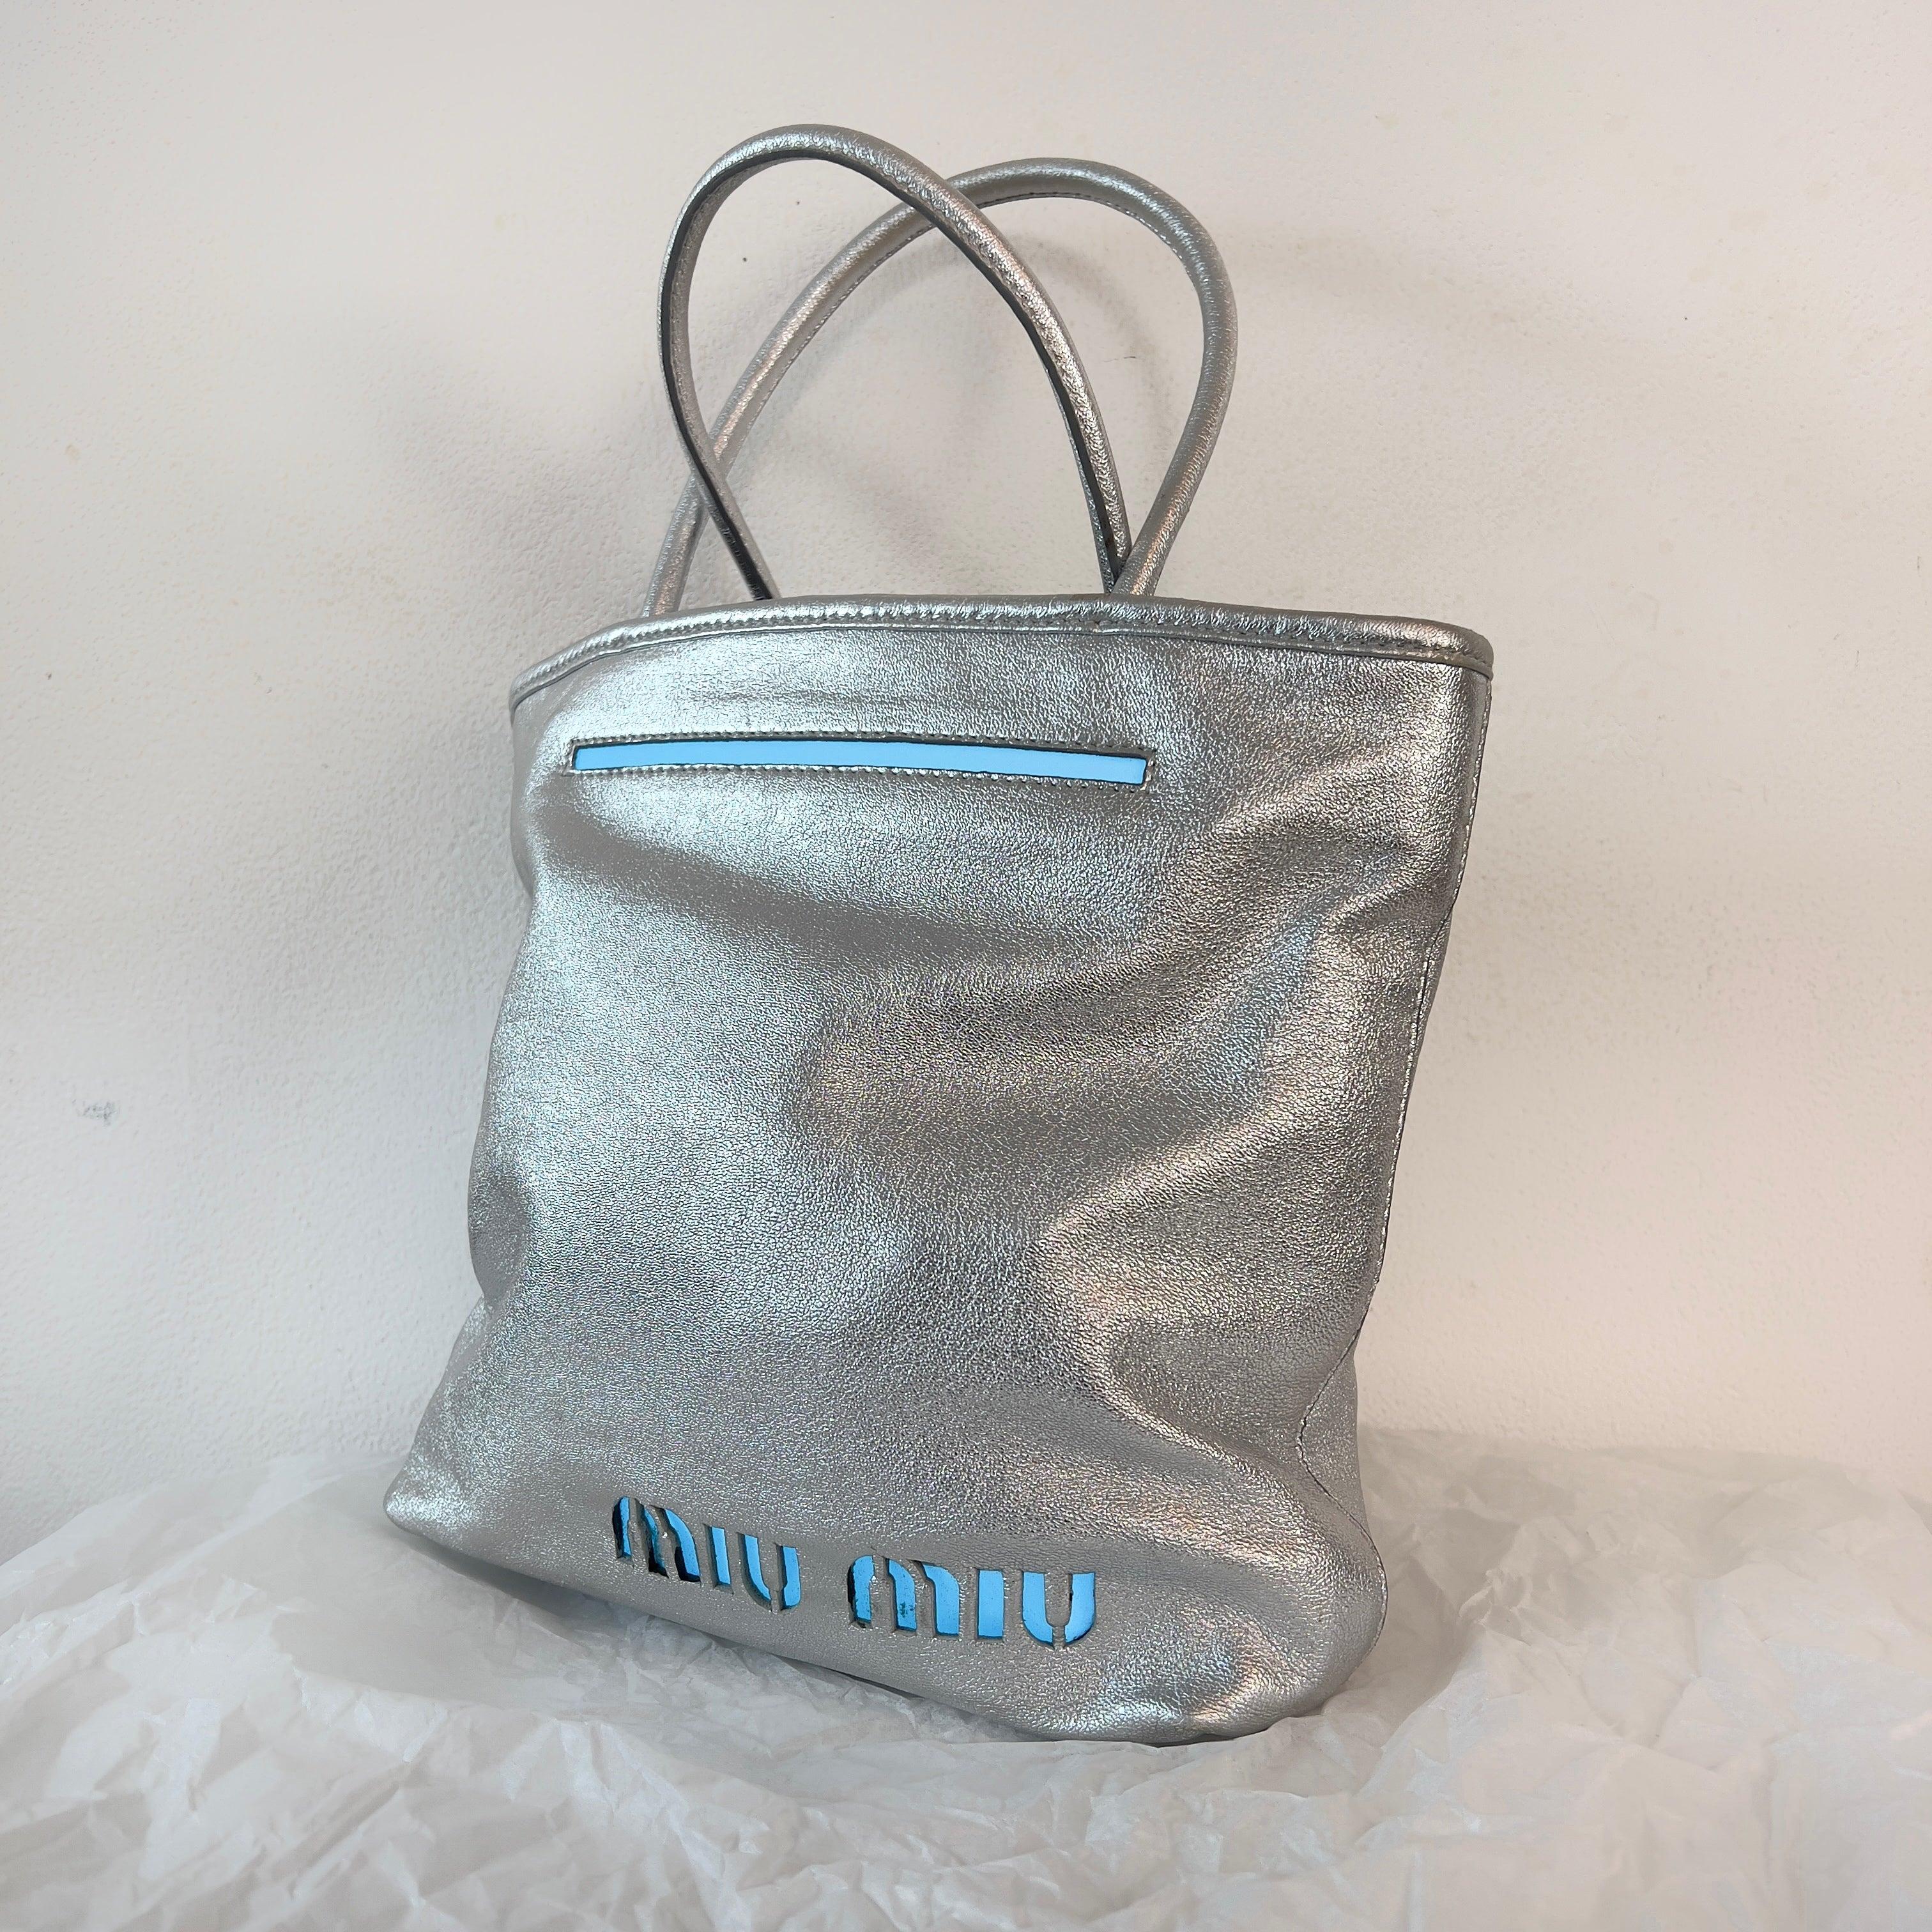 Miu Miu 2001 silver light up bag 2